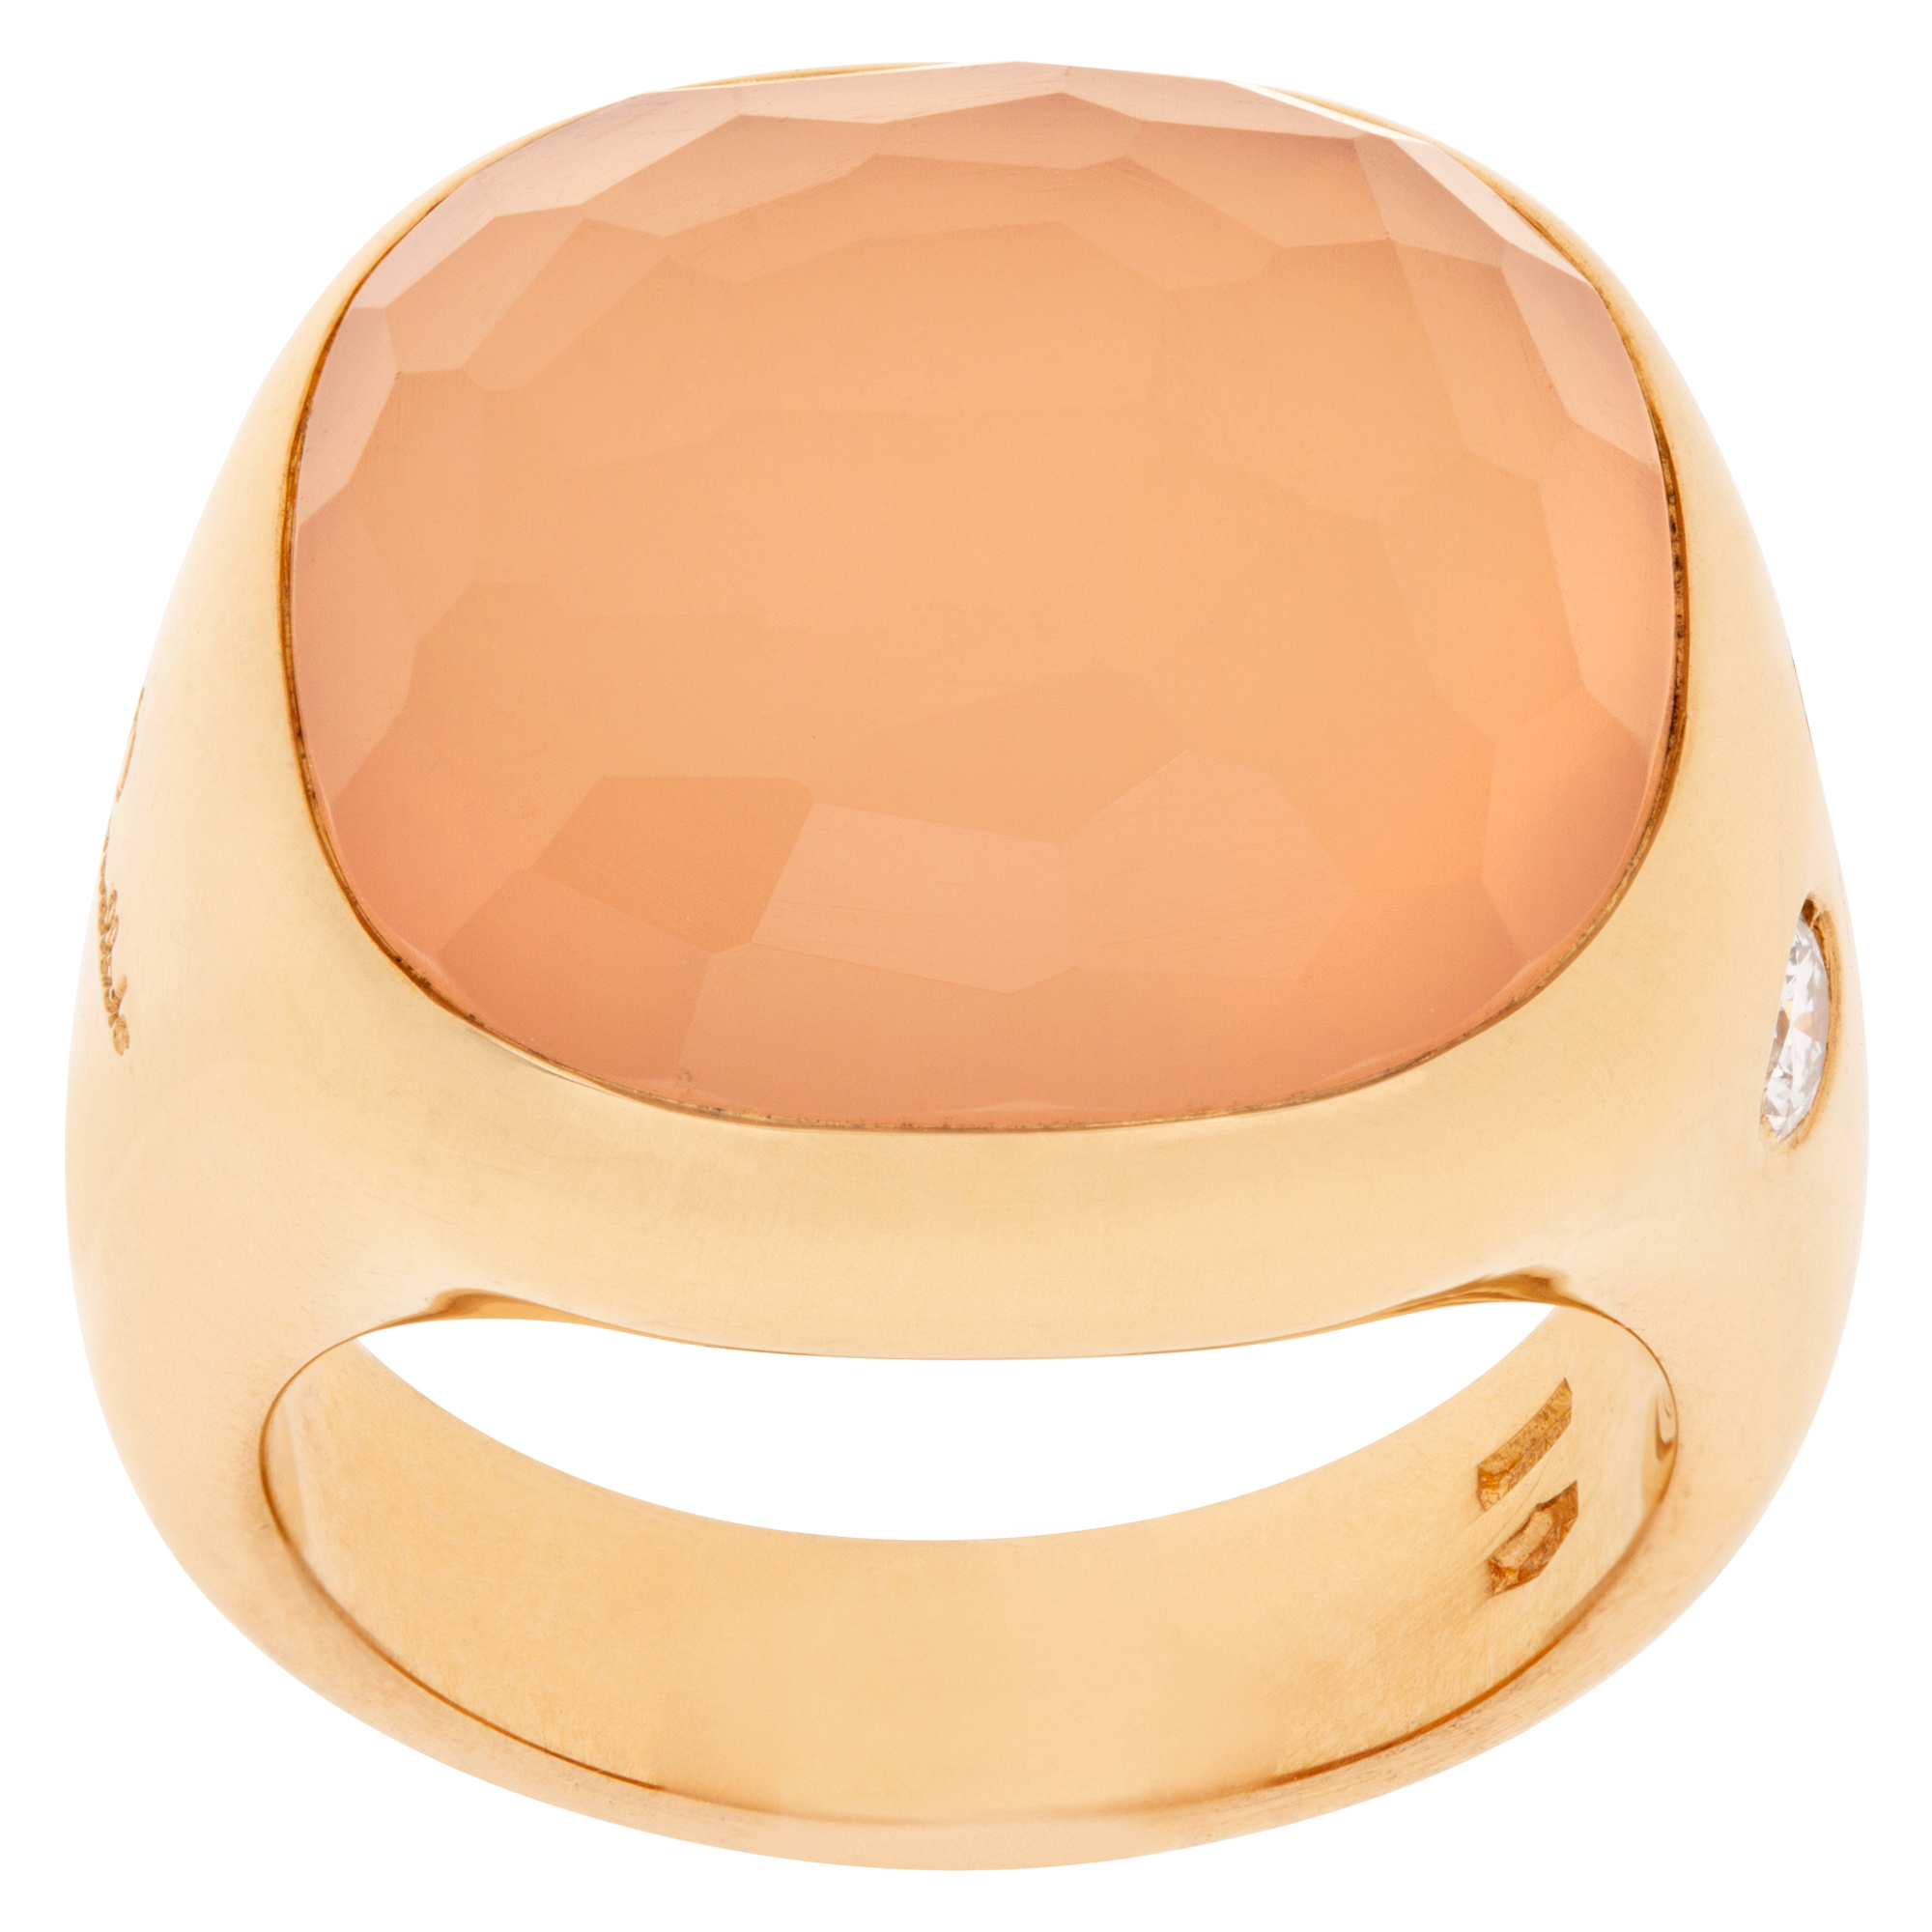 Pomellato rose quartz ring with 2 diamonds in 18k rose gold. Size 6.5